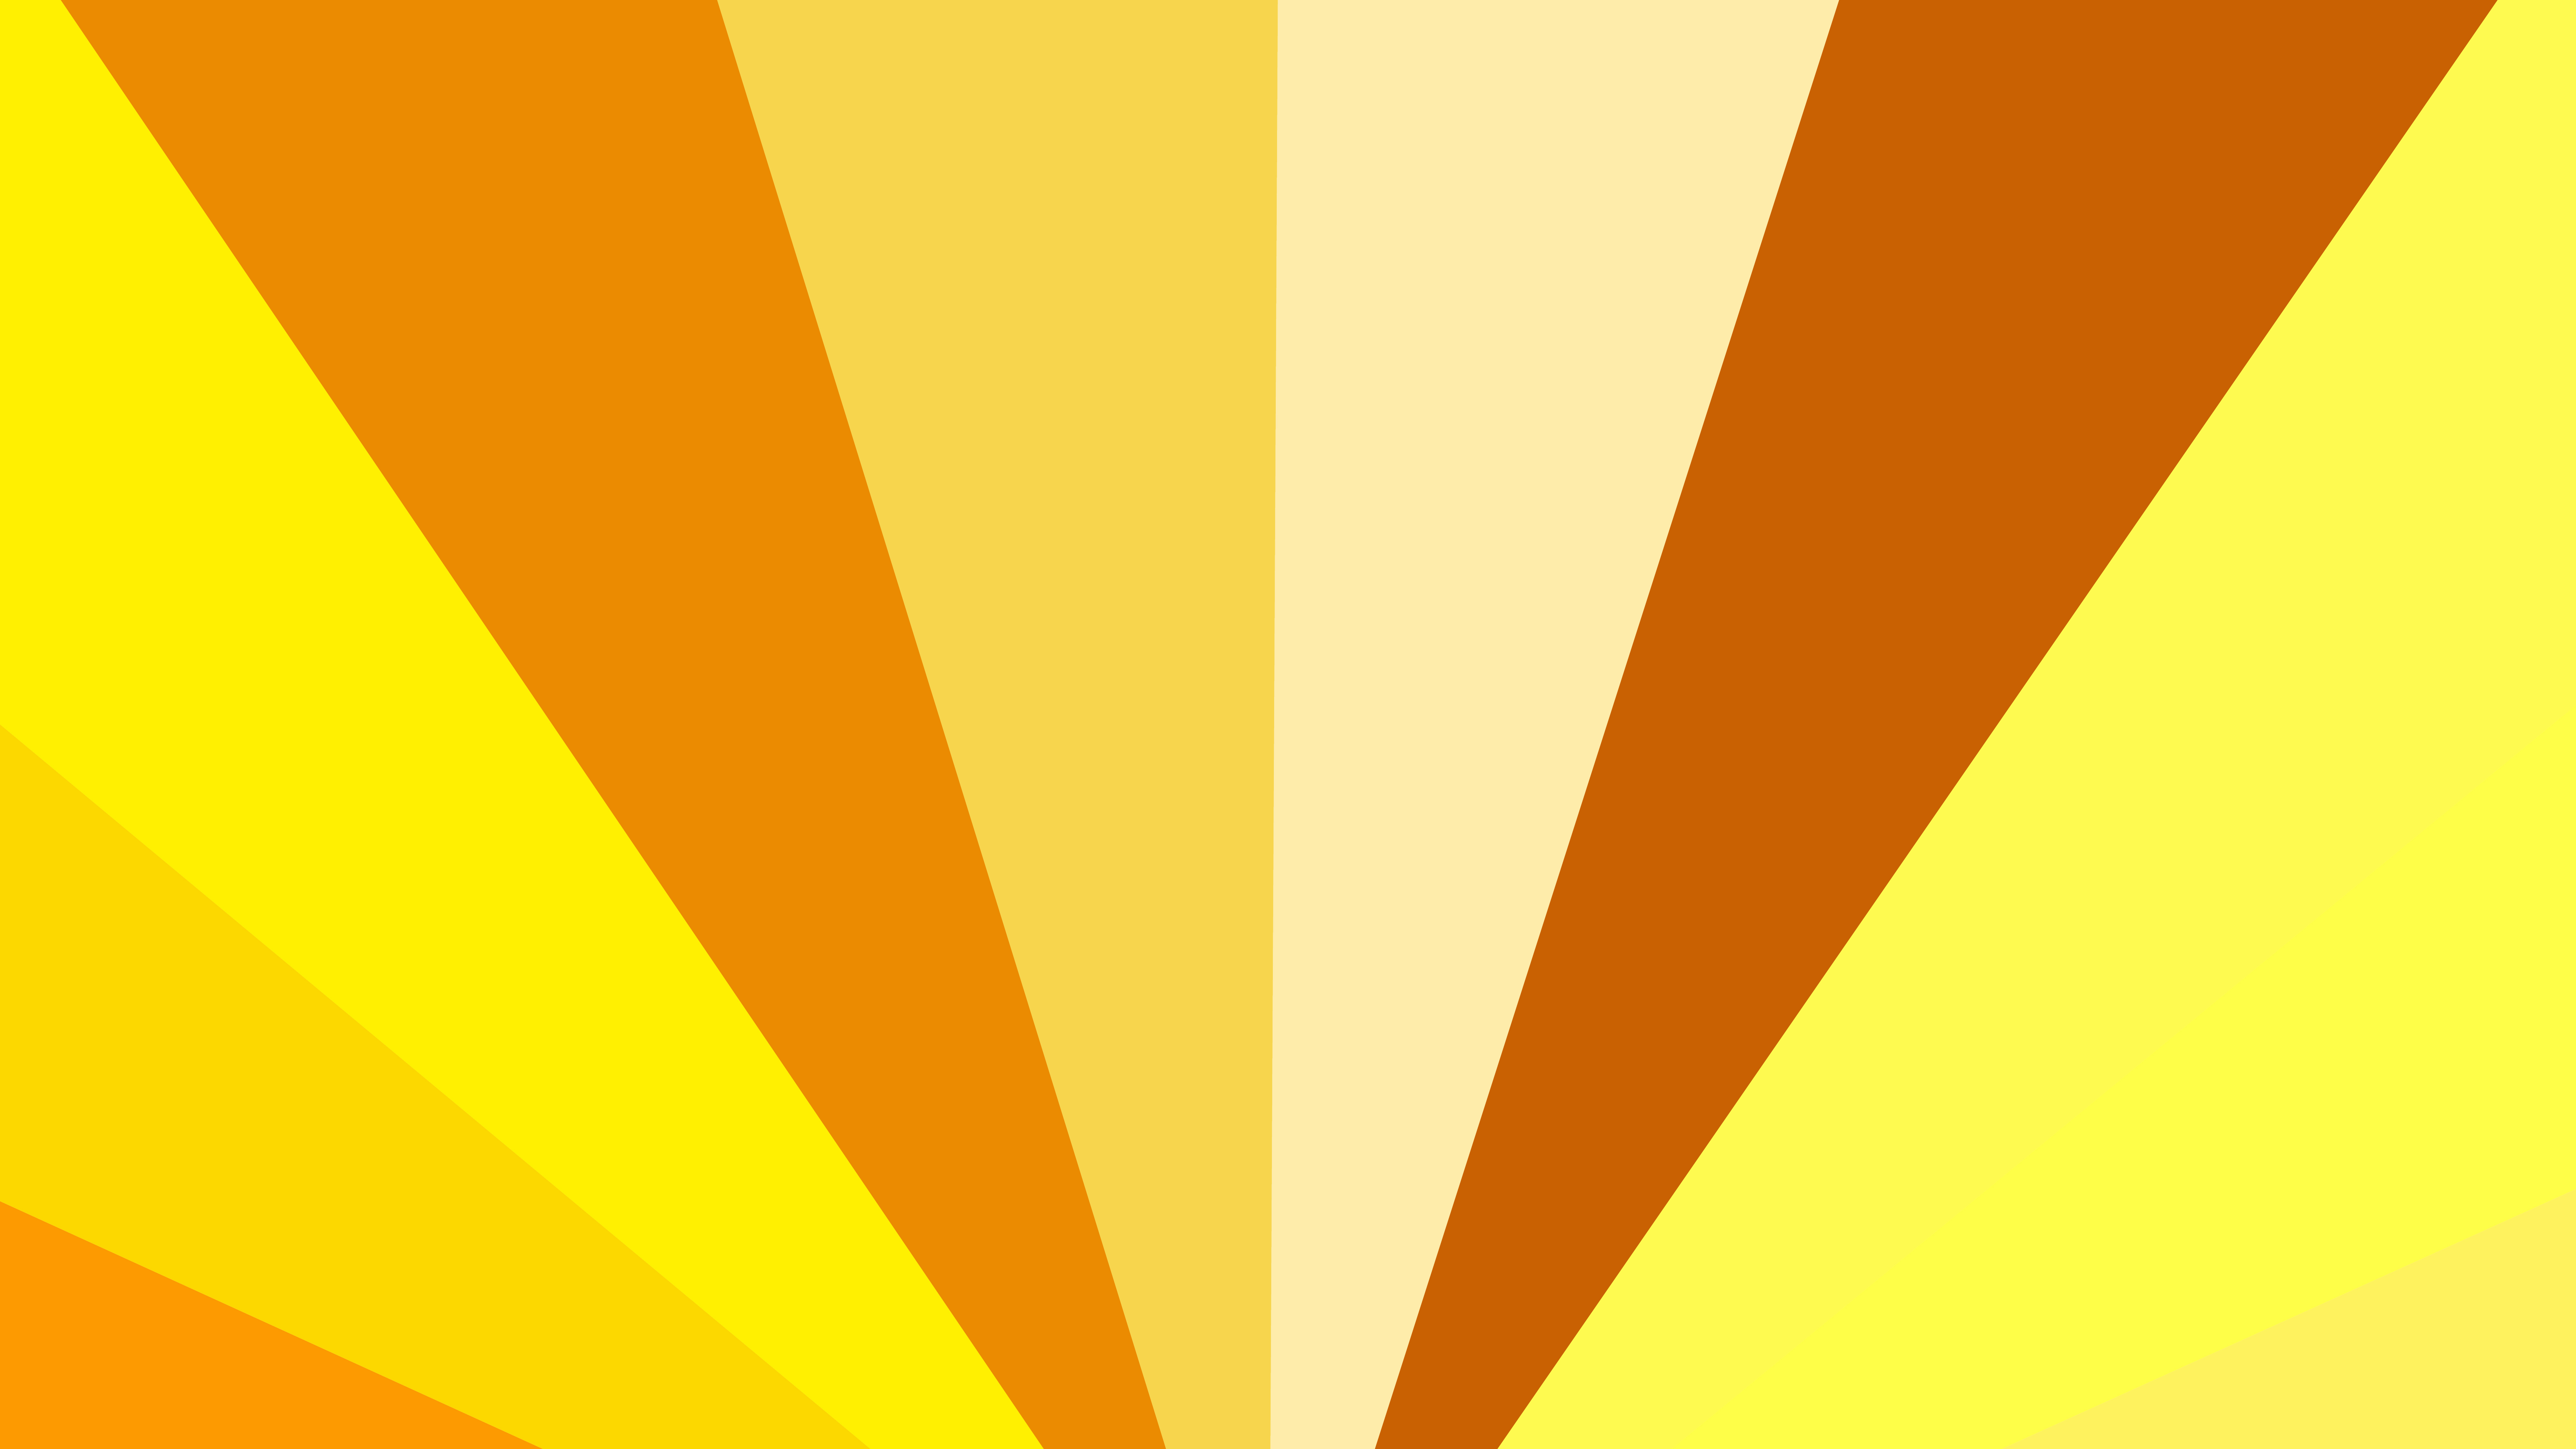 Free Orange and Yellow Rays Background Illustration